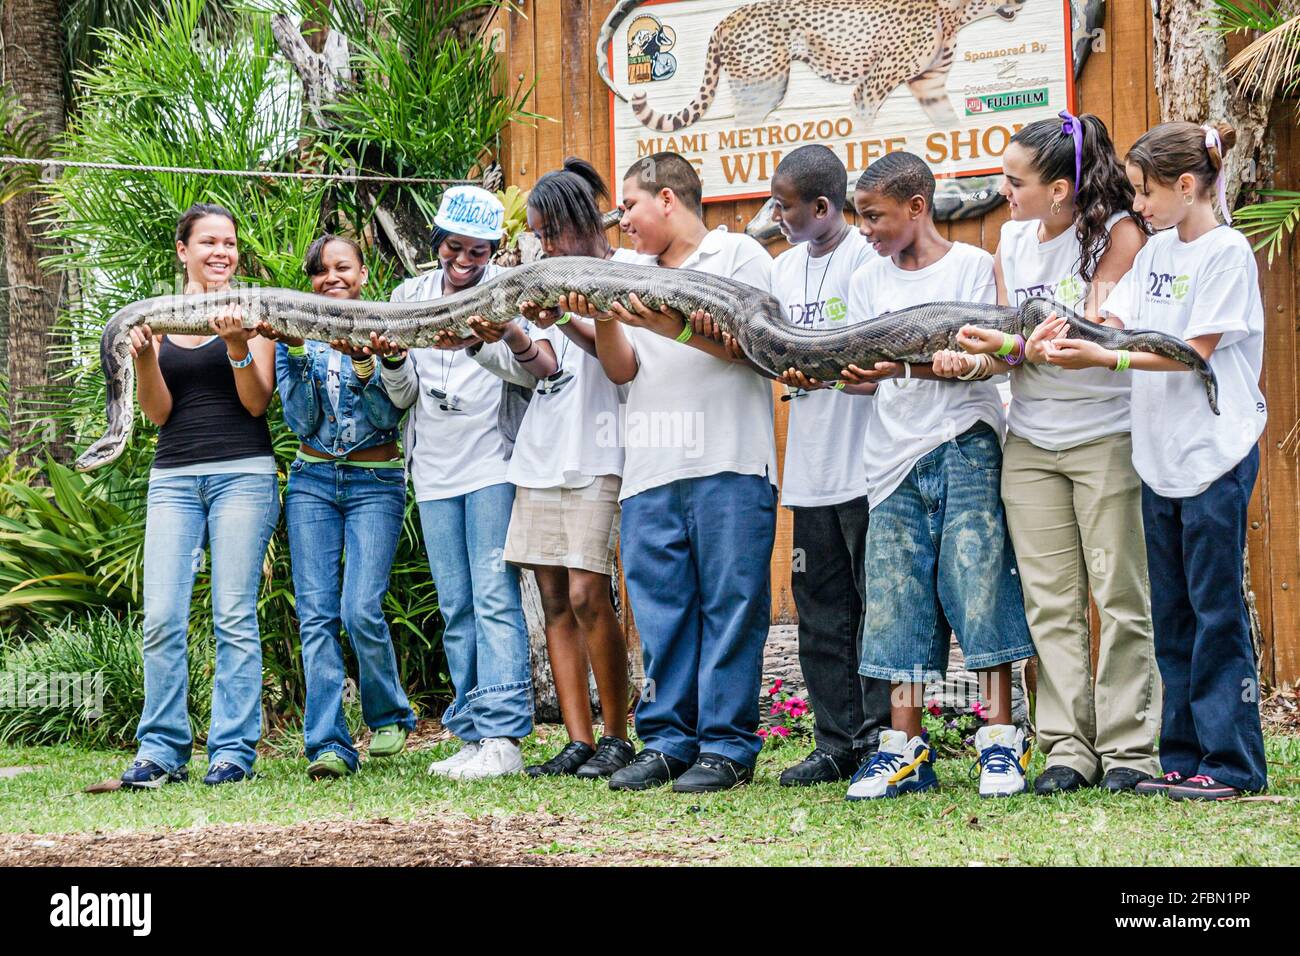 Miami Florida, MetroZoo Drug Free Youth in Town, adolescentes estudiantes adolescentes, clase de viaje de campo con la serpiente gigante de pitón Negro chicos hispanos niñas Foto de stock